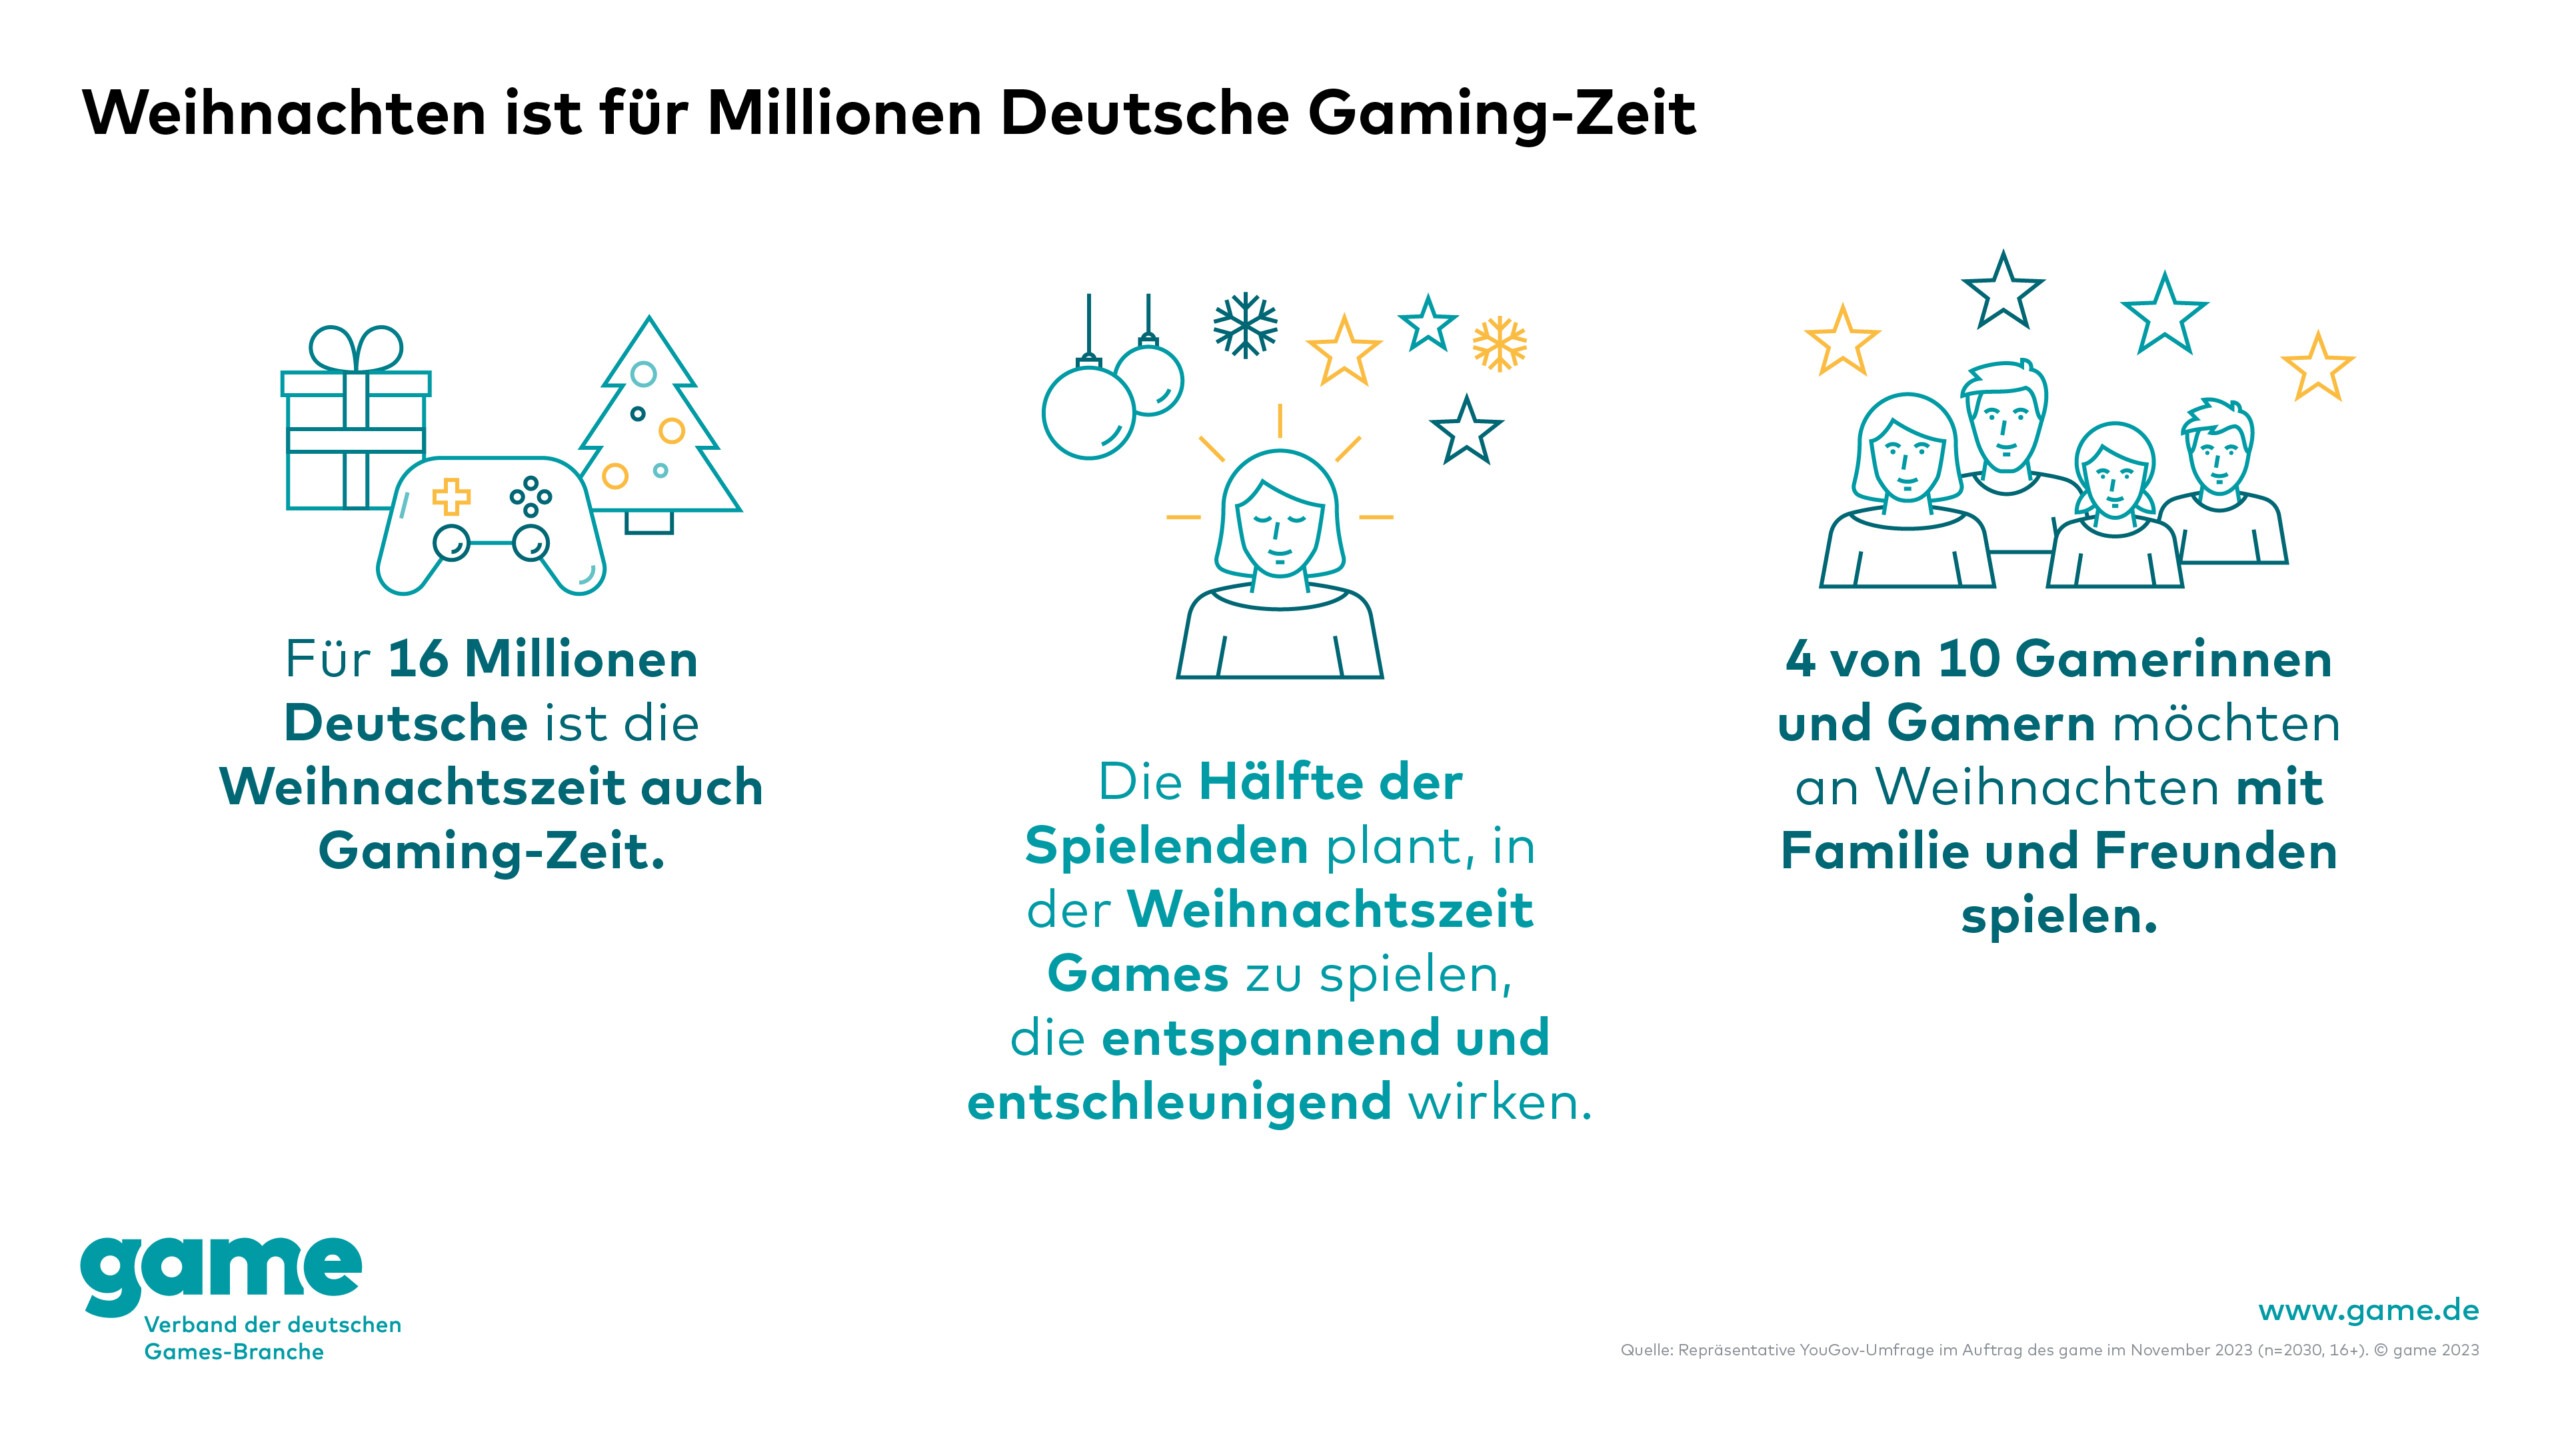 Weihnachten ist für Millionen Deutsche Gaming-Zeit